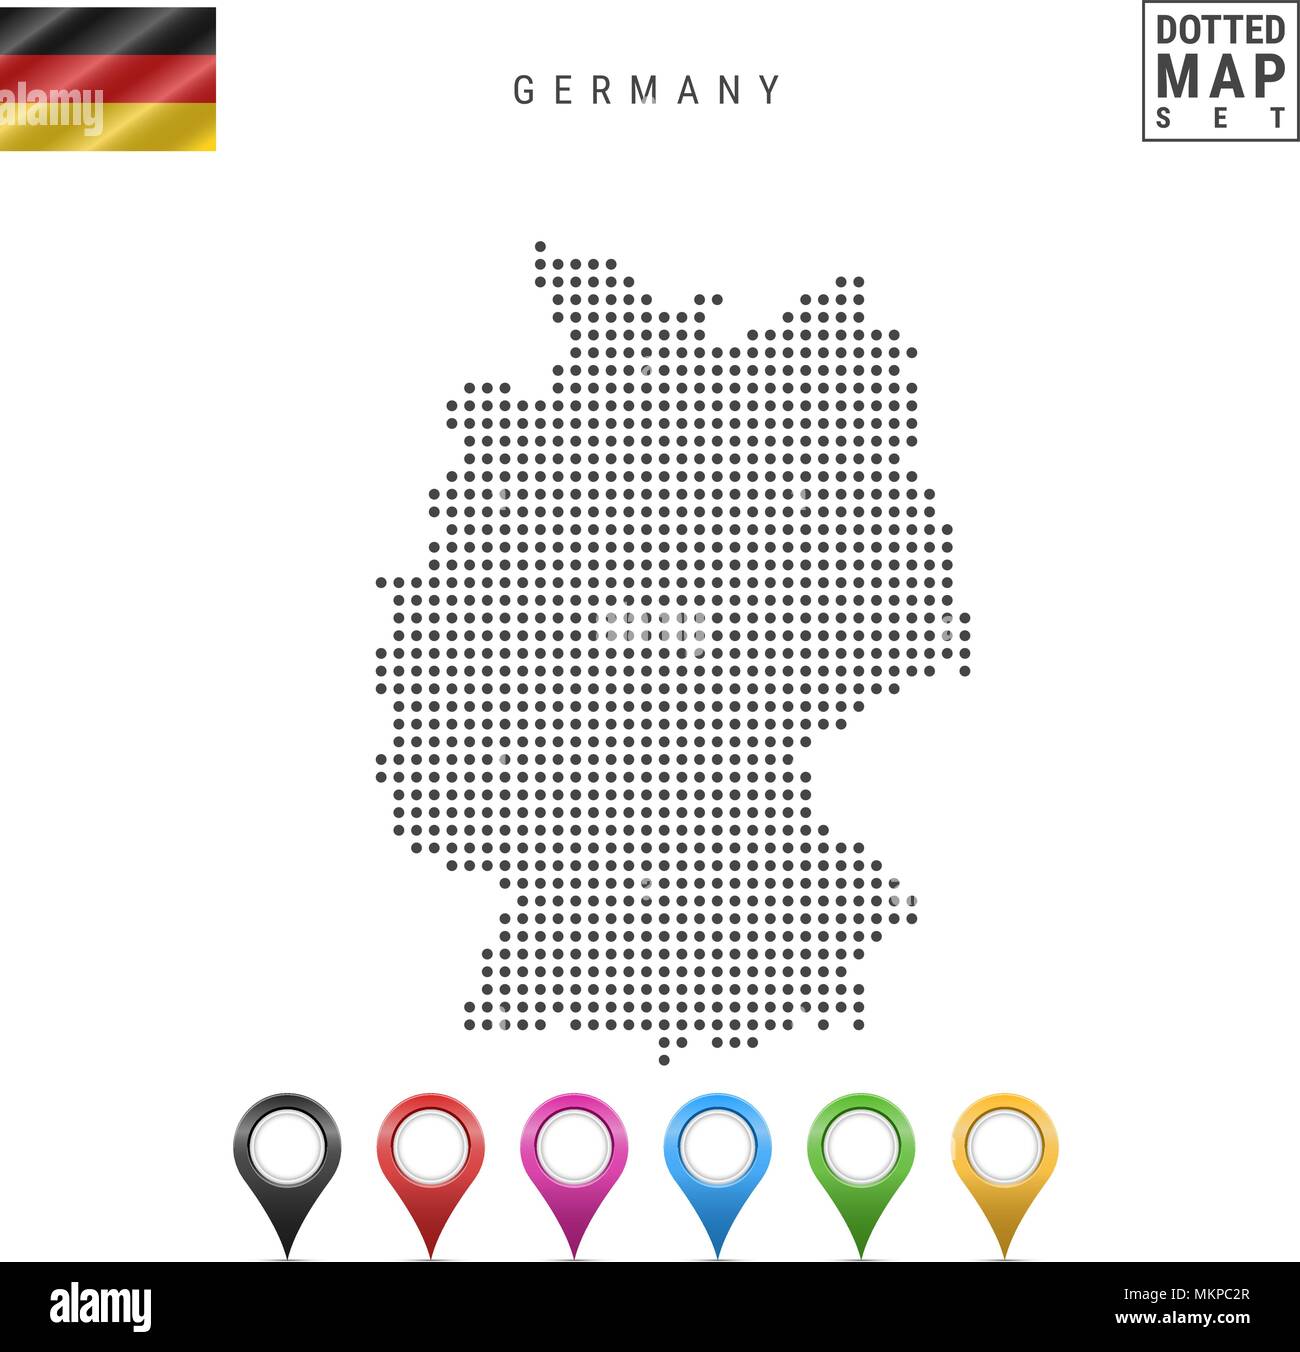 Vektor gepunktete Karte von Deutschland. Einfache Silhouette von Deutschland. Die Nationalflagge von Deutschland. Mehrfarbige Karte Markierungen Stock Vektor